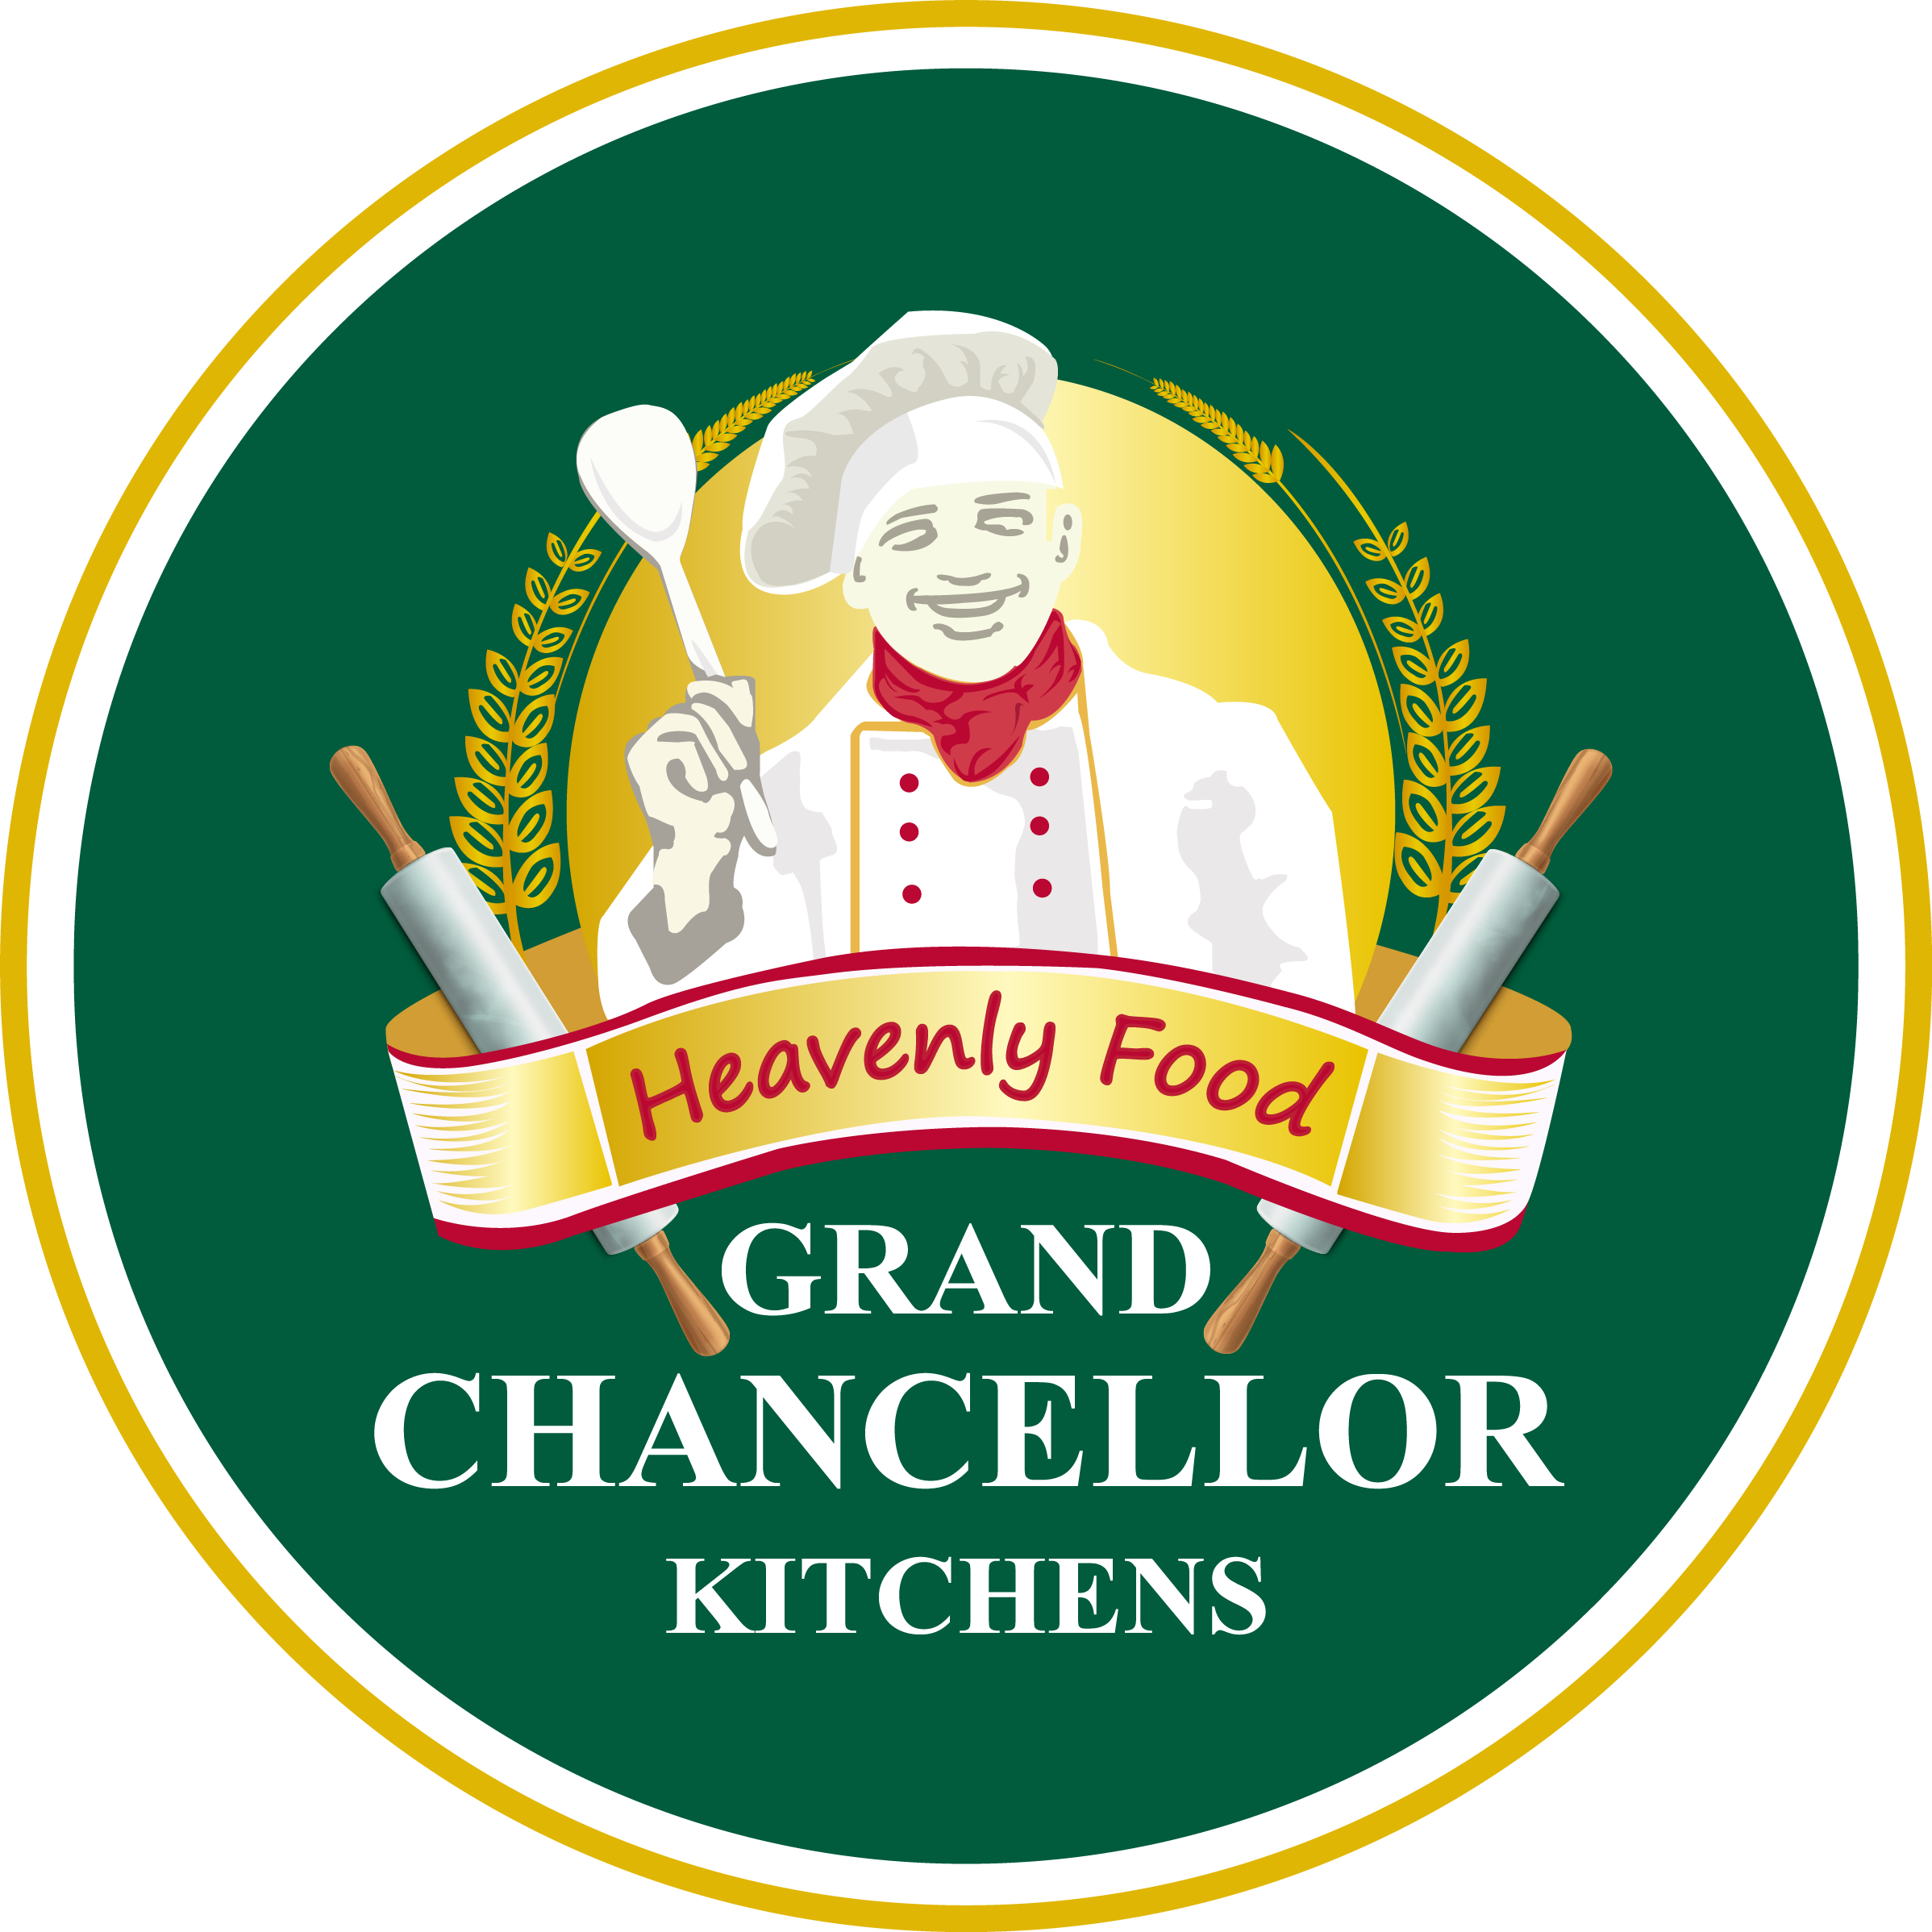 Grand Chancellor